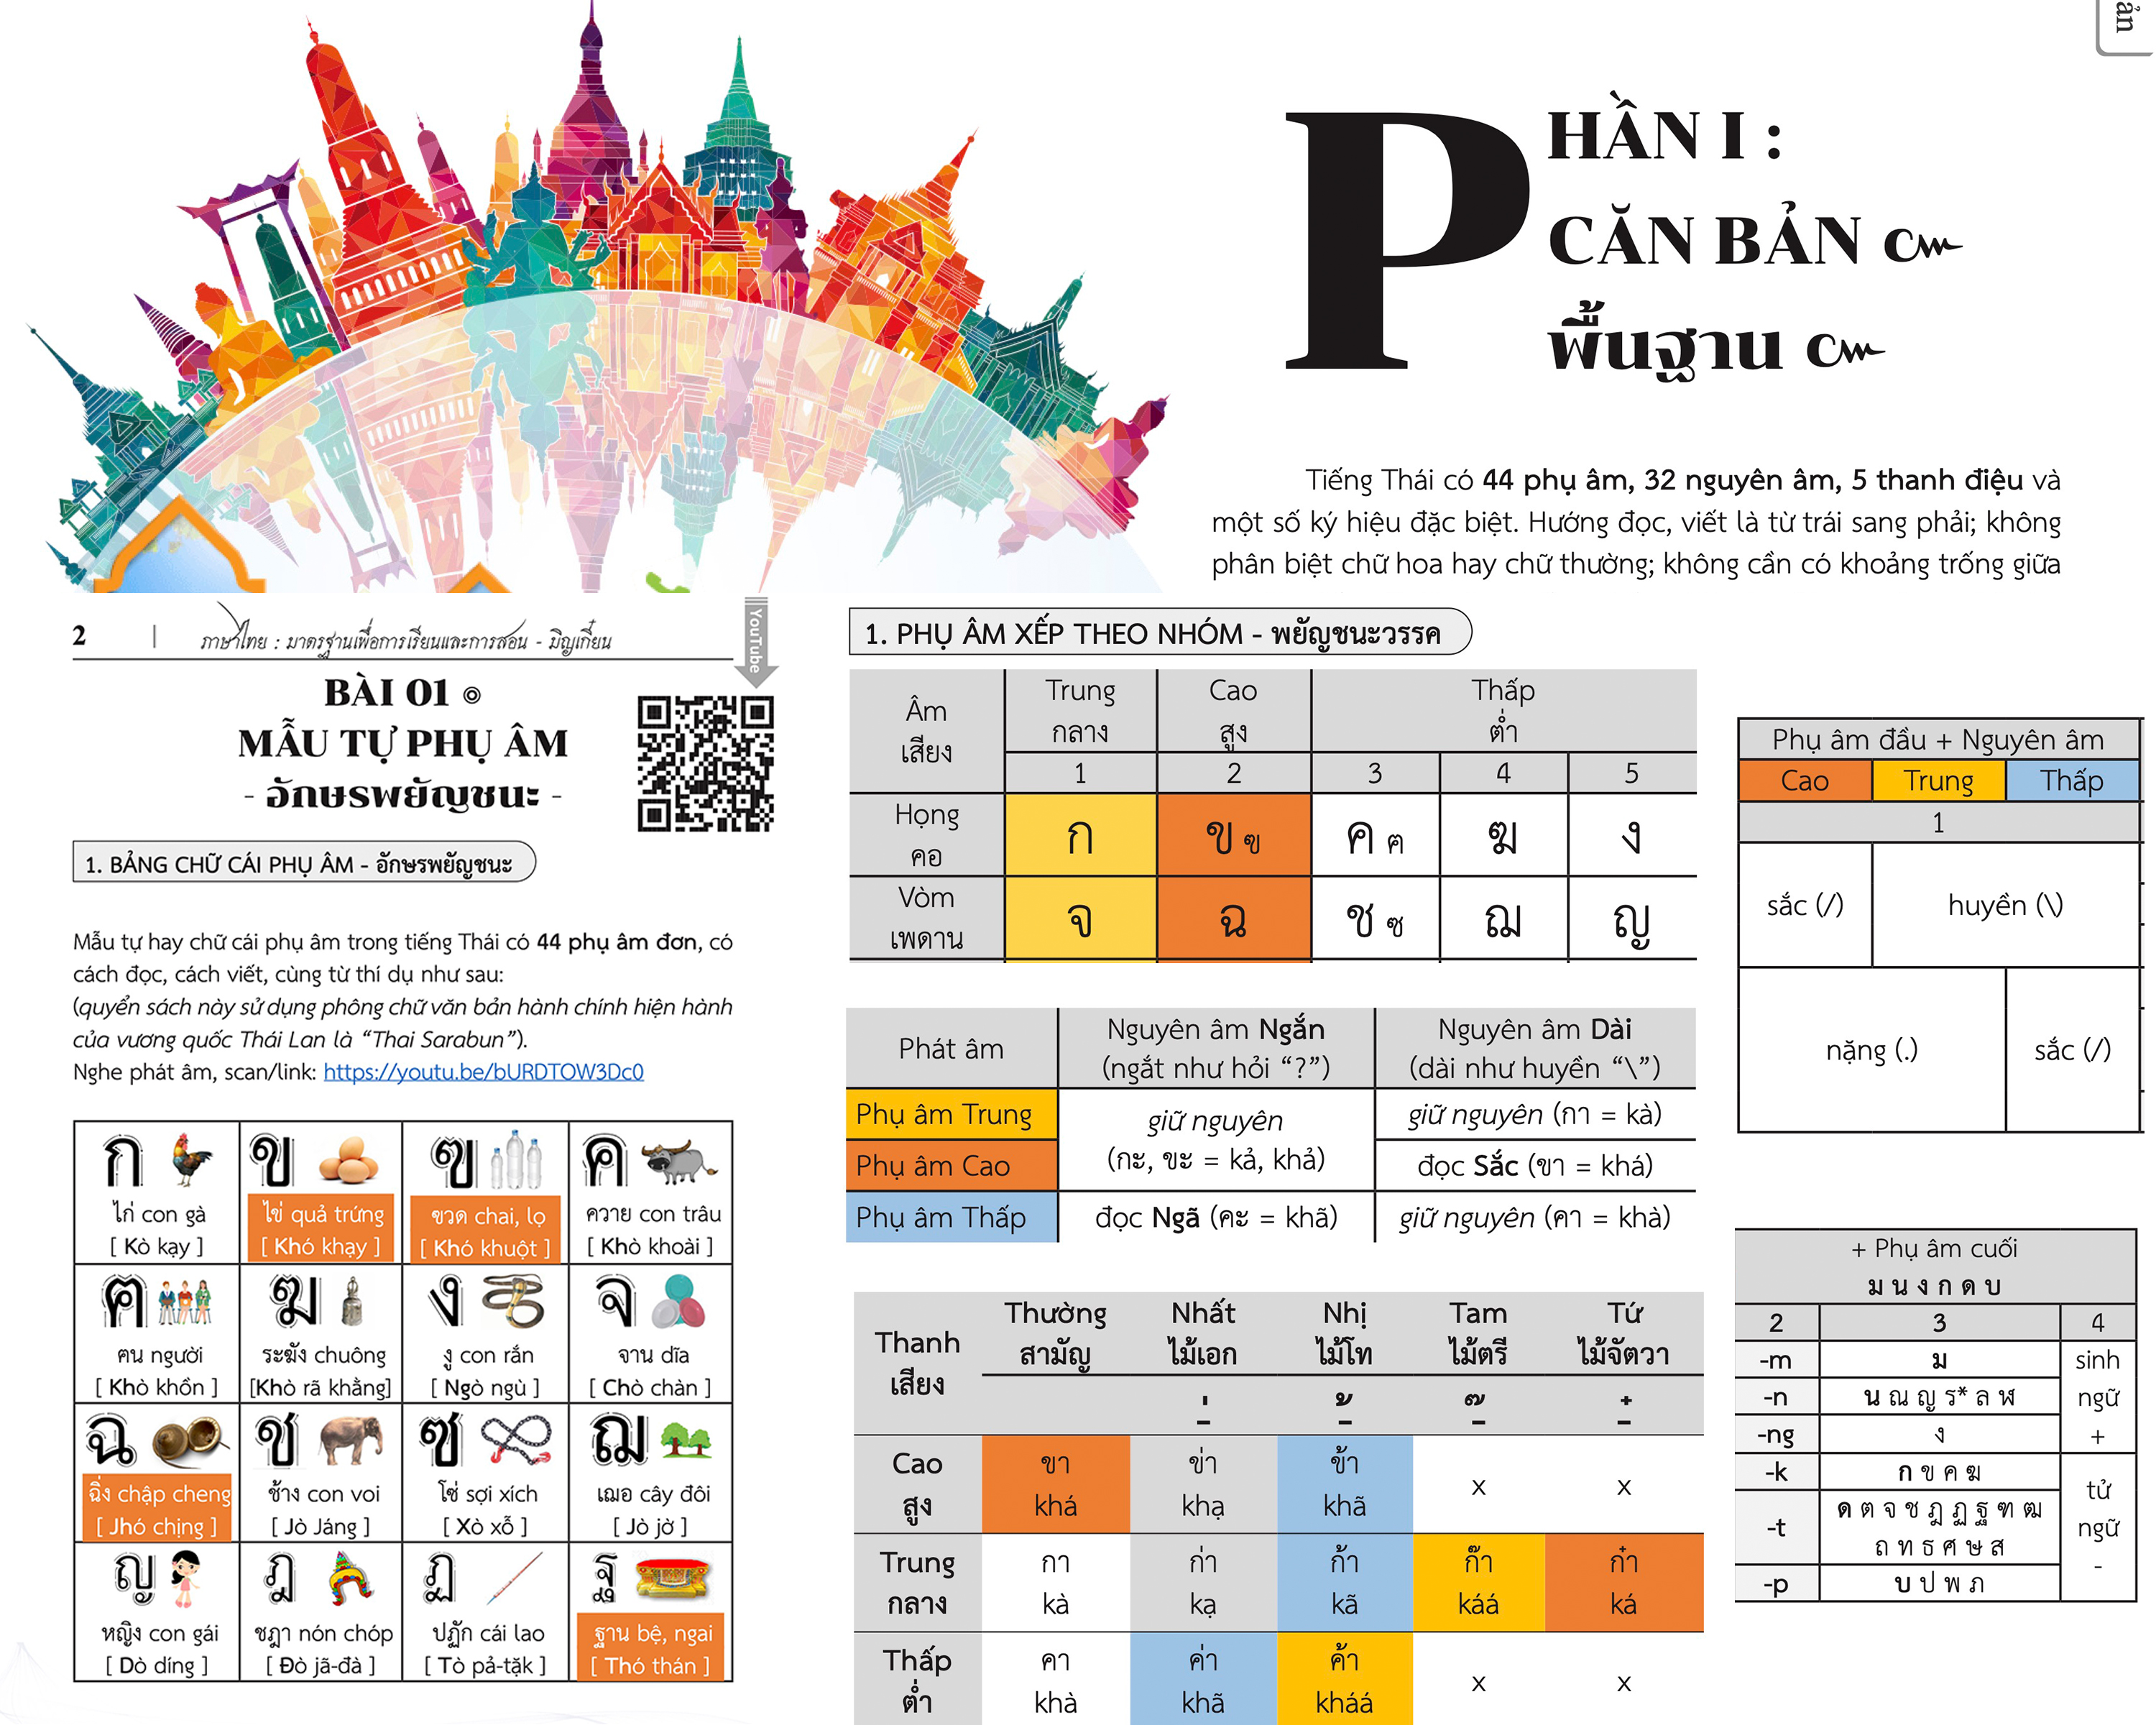 Sách tiếng Thái cơ bản từ Con số 0 PDF, Tiếng Thái dạy và học, Ngữ pháp tiếng Thái, tài liệu học tiếng Thái, Ngữ pháp học tiếng Thái, học tiếng Thái